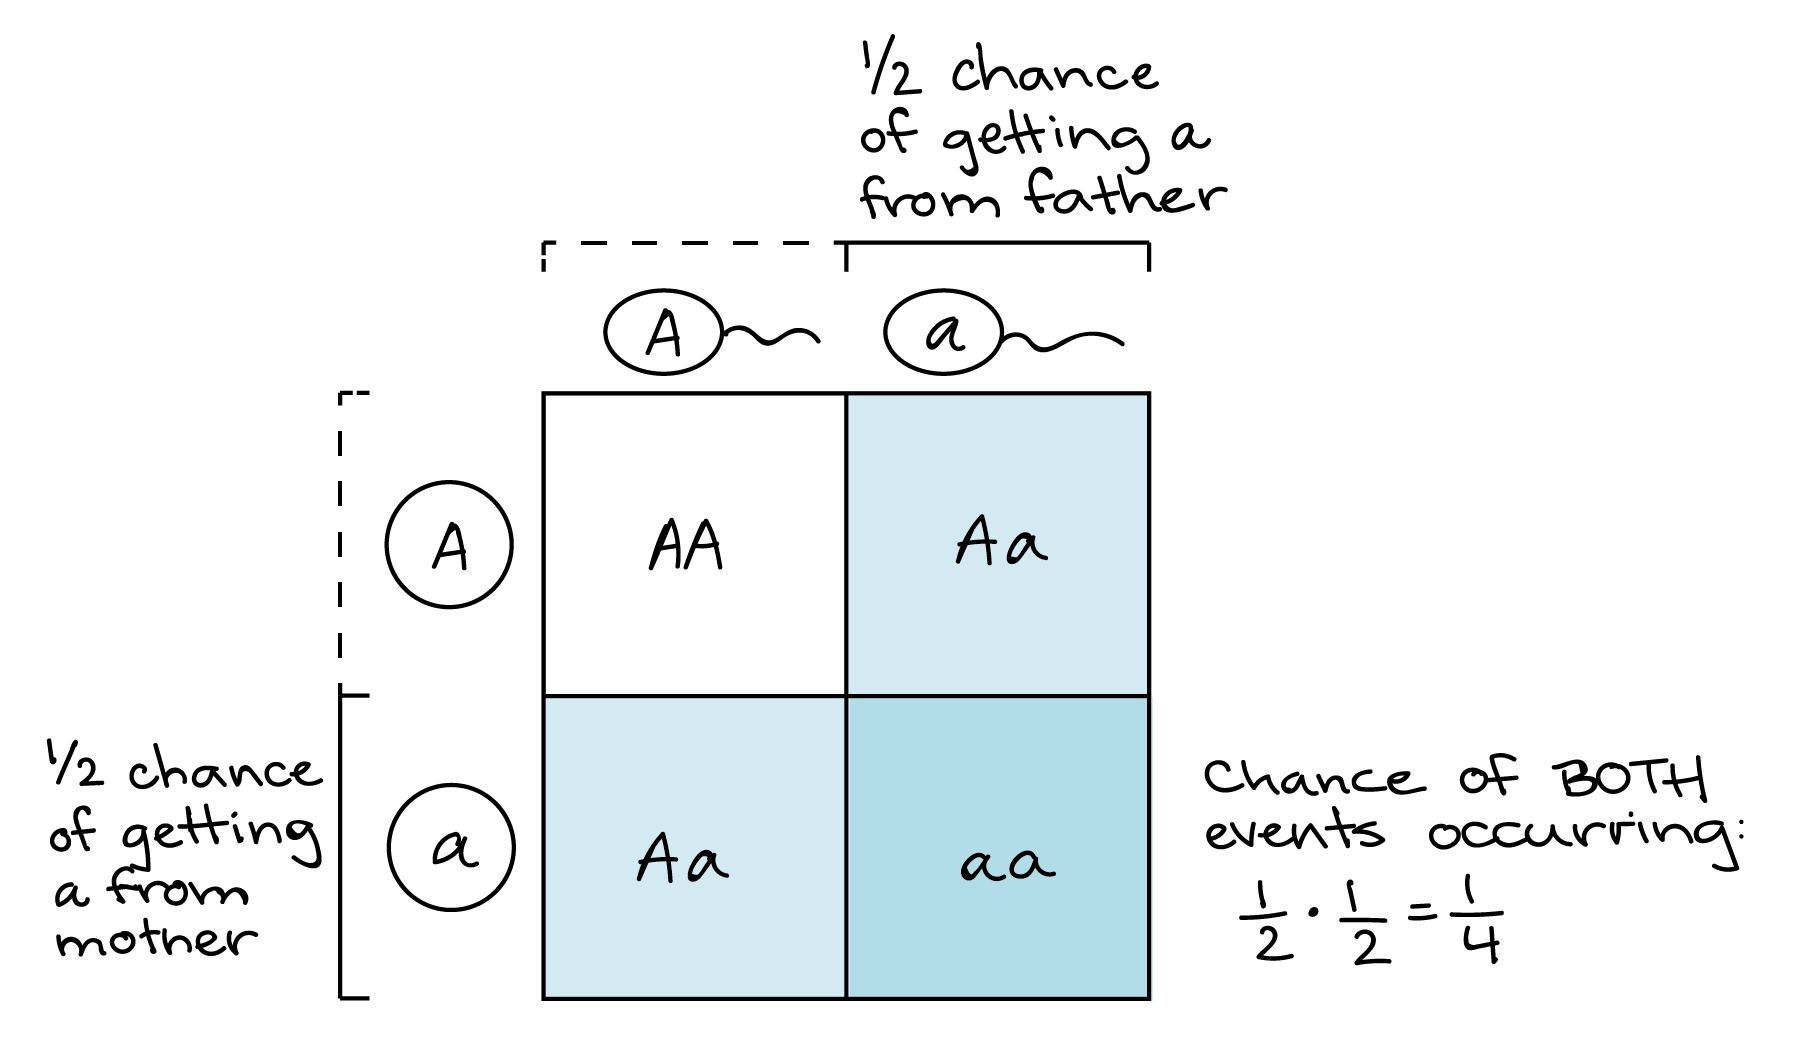 Ilustración de cómo un cuadrado de Punnett puede representar la regla del producto. Cuadrado Punnett: ||A|a-|-|-|-A||AA|**AA**A||_AA_|***AA*** Hay una 1/2 probabilidad de obtener un alelo a del progenitor masculino, correspondiente a la columna más a la derecha del cuadrado Punnett. De igual manera, hay una probabilidad de 1/2 de obtener un alelo a del padre materno, correspondiente a la fila más baja del cuadrado Punnett. El cruce de estos la fila y columna, correspondiente al cuadro inferior derecho de la tabla, representa la probabilidad de obtener un alelo del padre materno y del padre paterno (1 de cada 4 casillas en el cuadrado de Punnett, o una probabilidad de 1/4).